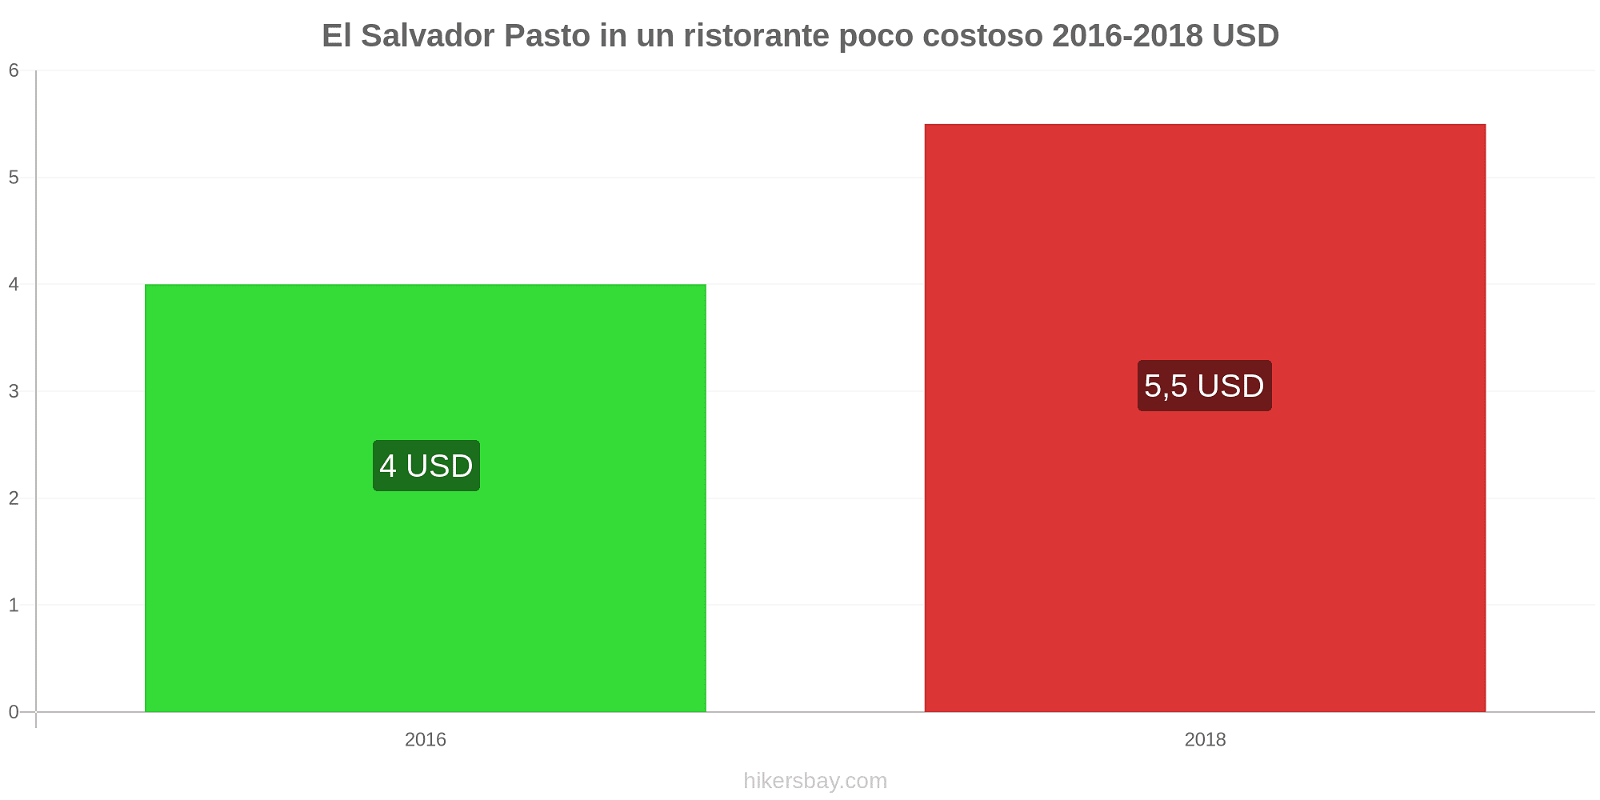 El Salvador cambi di prezzo Pasto in un ristorante economico hikersbay.com